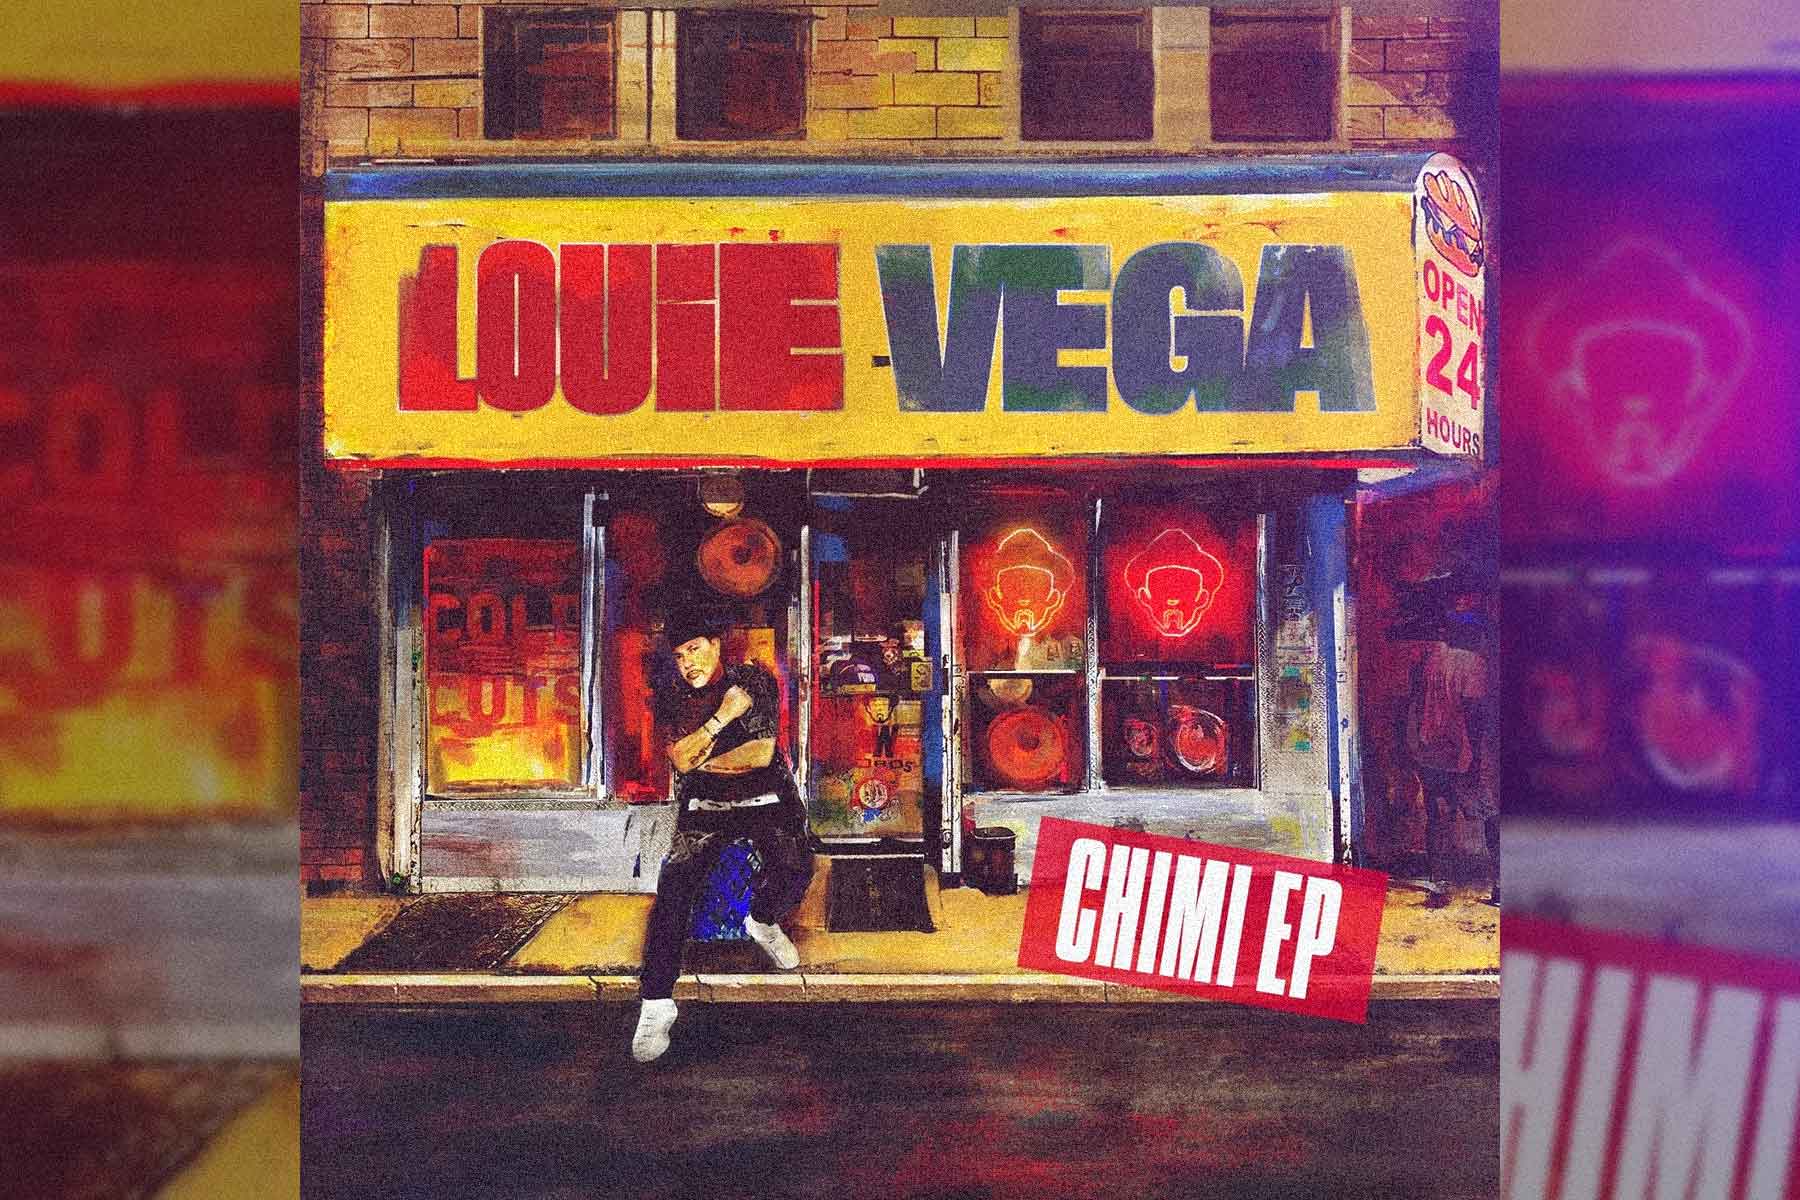 Louie Vega Chimi album art